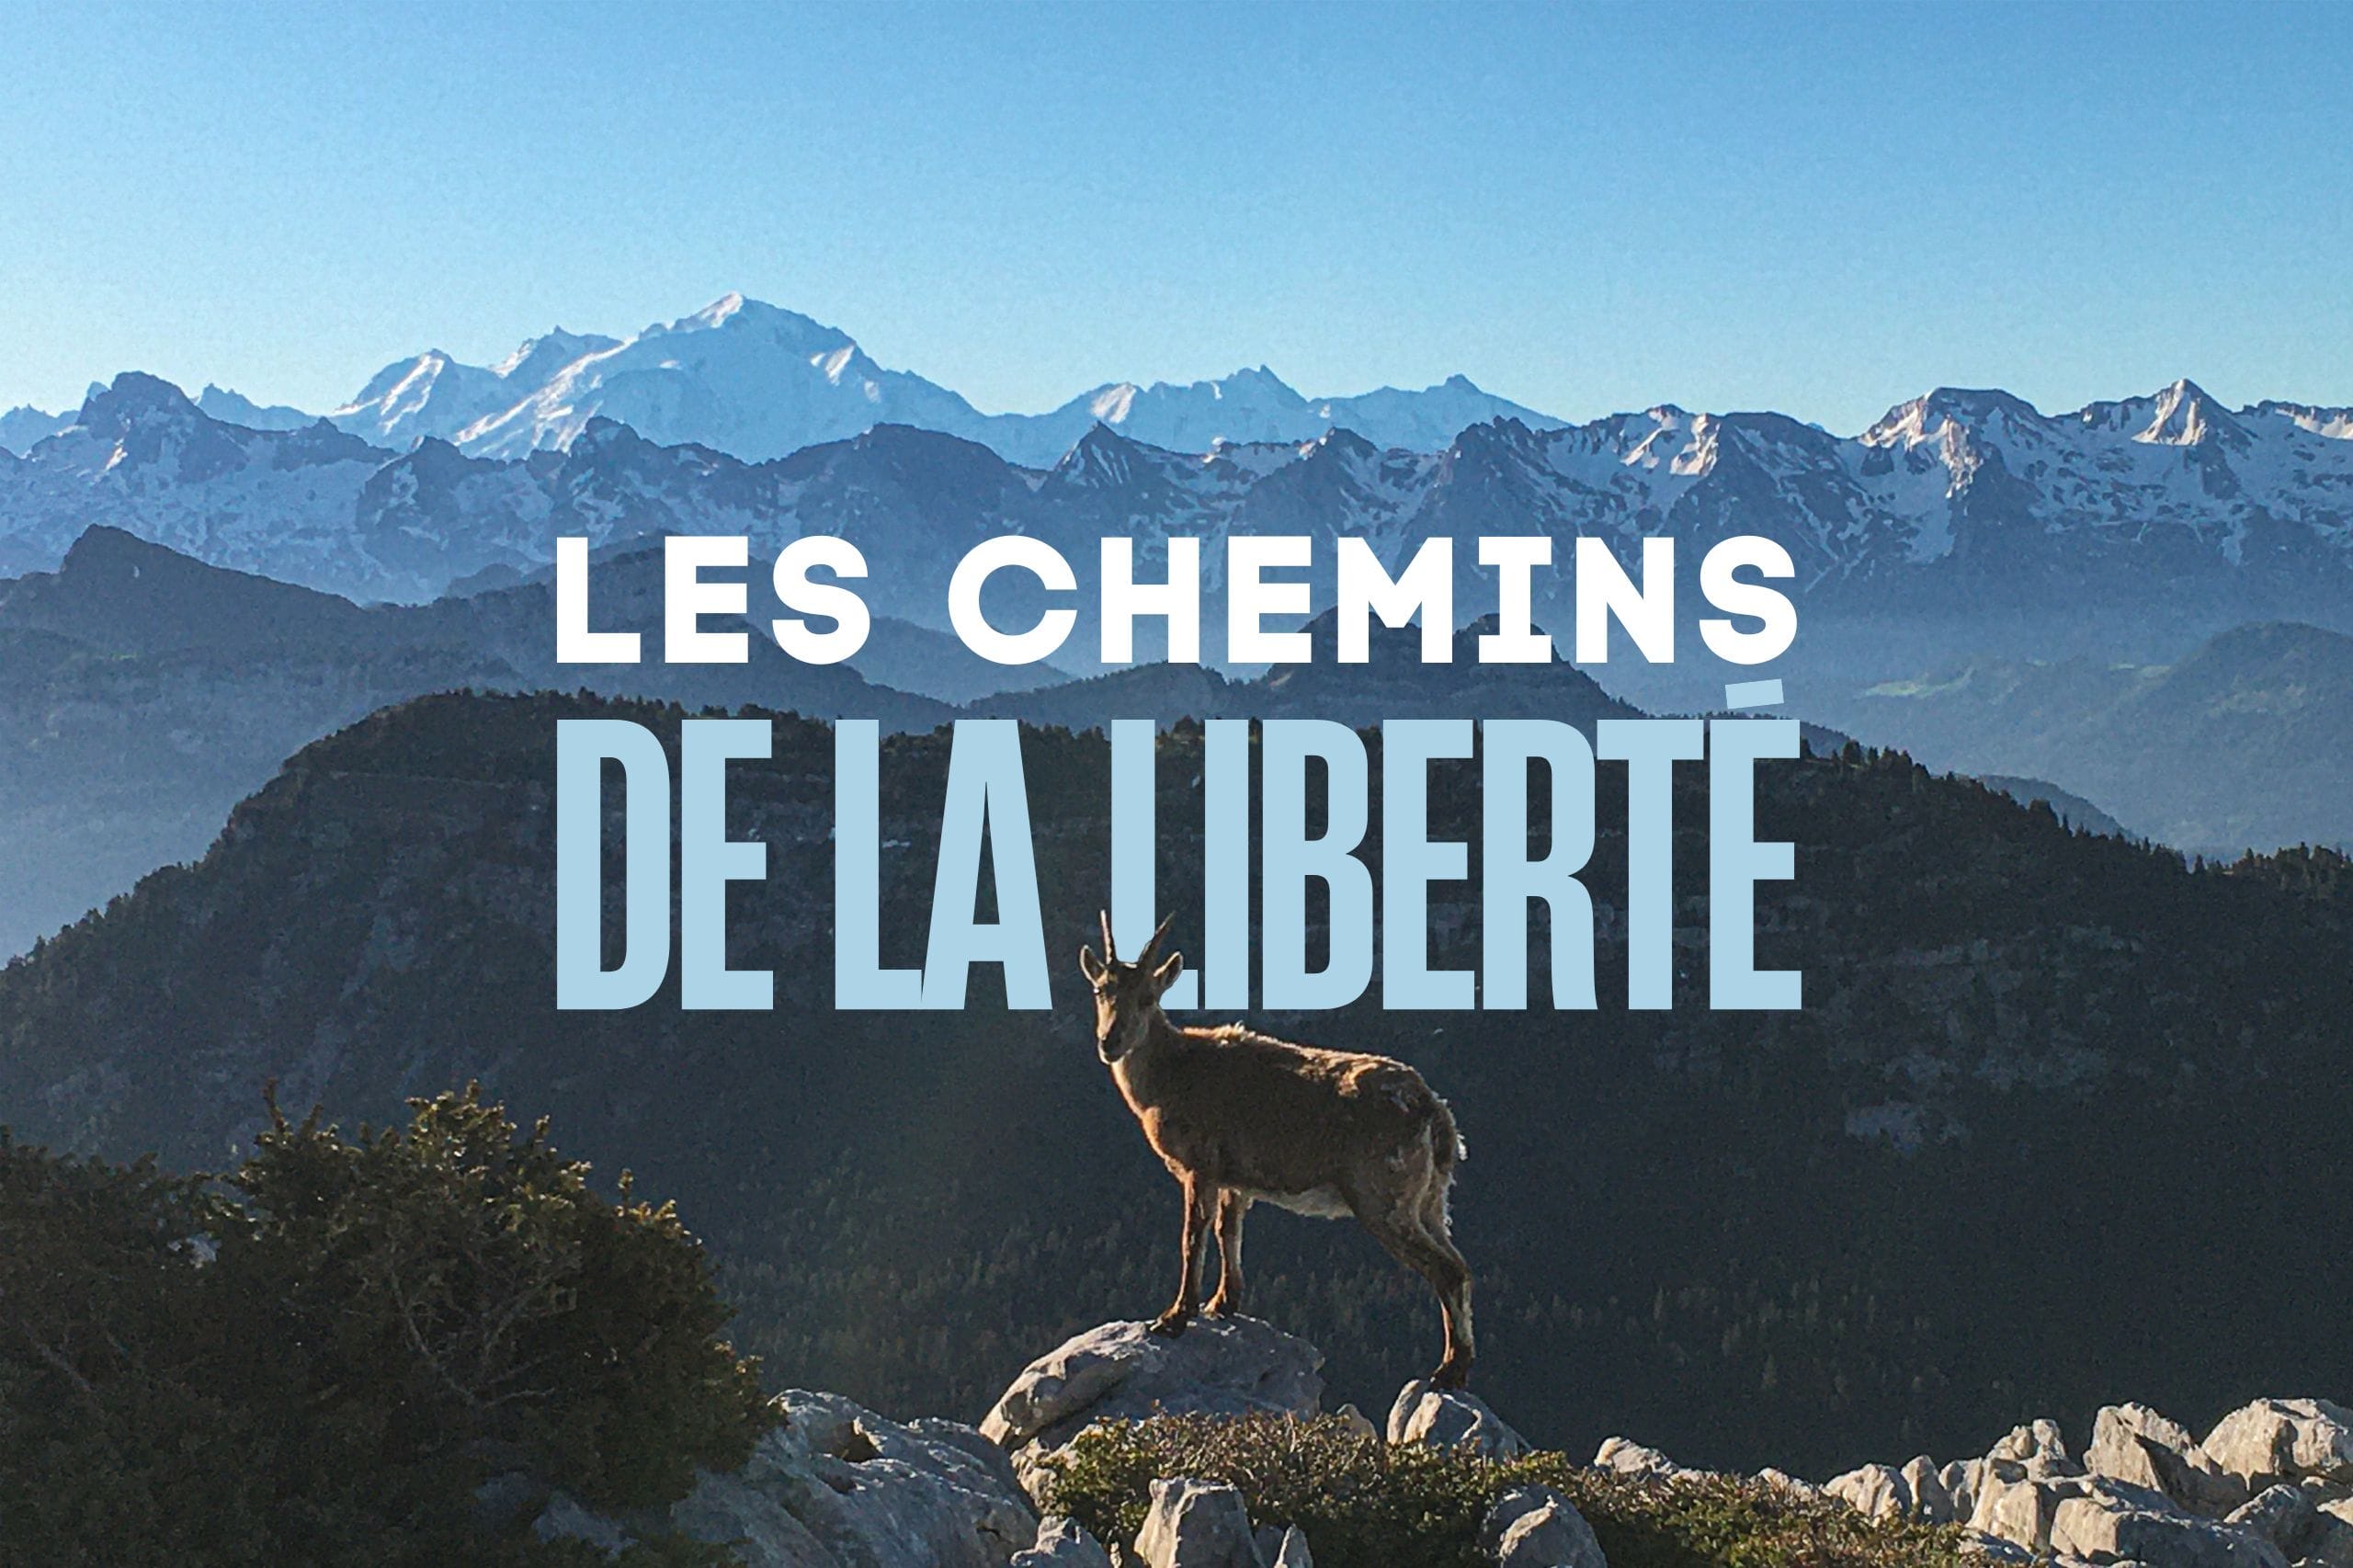 LES CHEMINS DE LA LIBERTE  : Trek traversée des Aravis depuis Annecy en randonnée et refuges